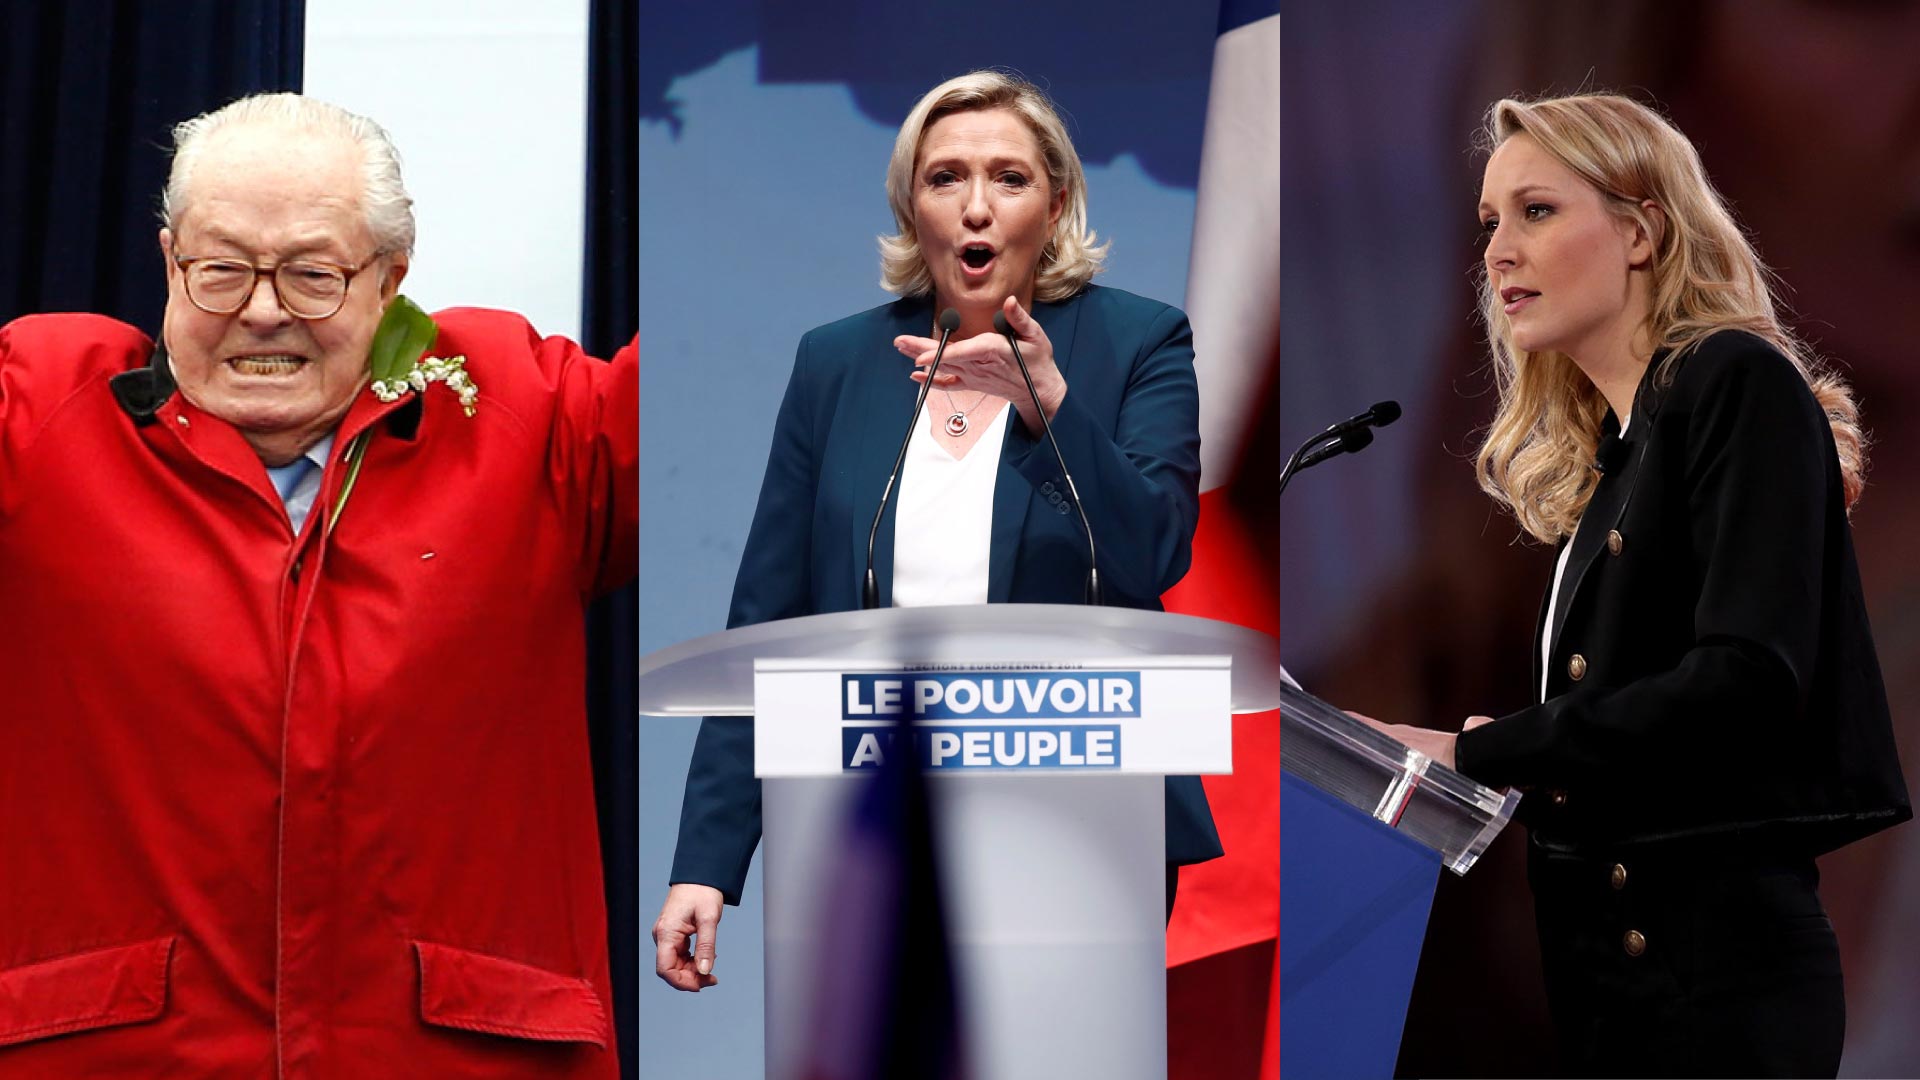 La dinastía Le Pen: medio siglo de ultraderecha en Francia